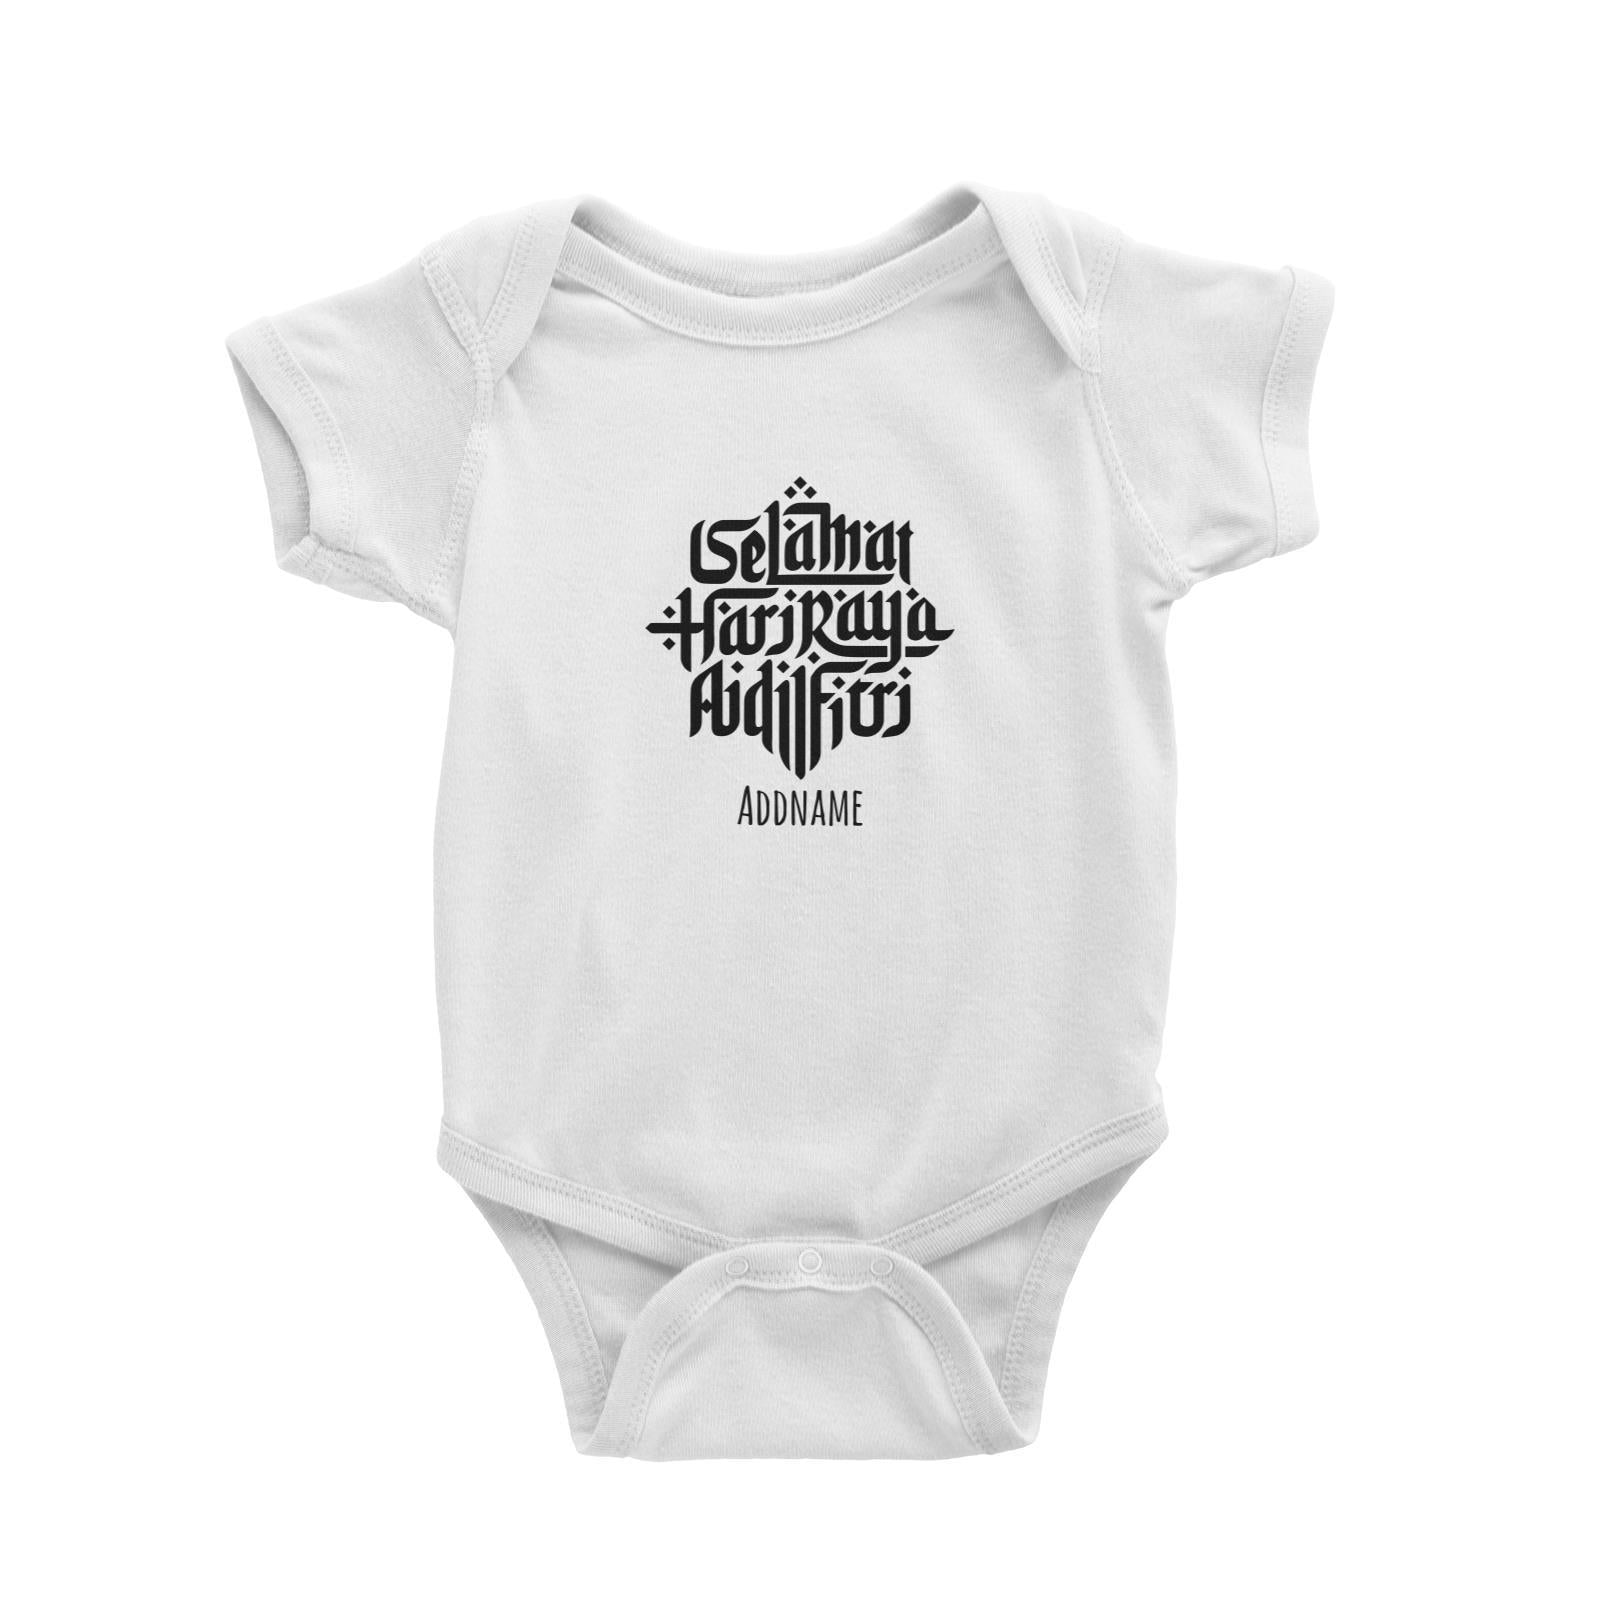 Selamat Hari Raya Aidilfitri Baby Romper  Personalizable Designs